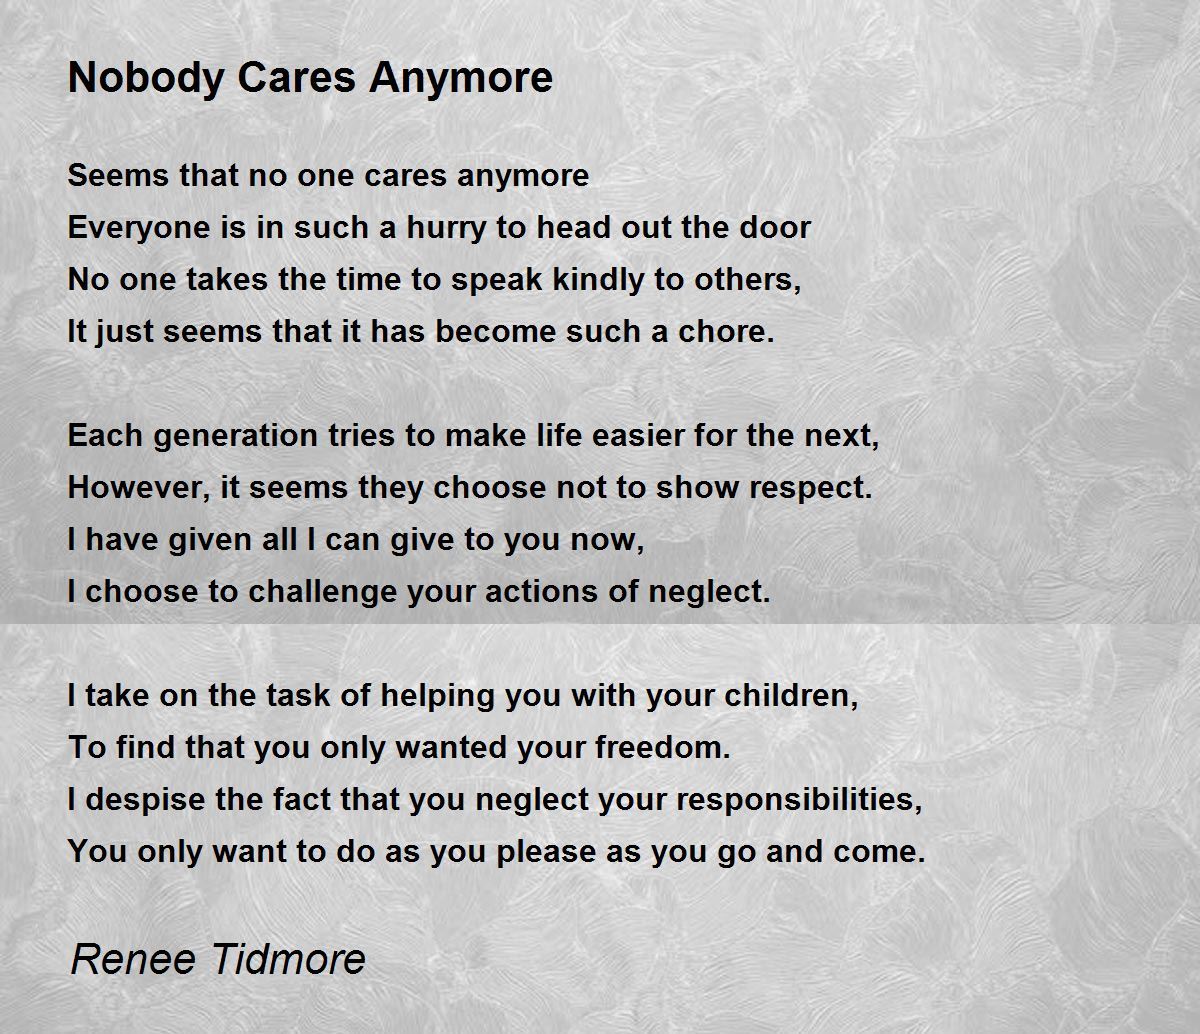 Nobody Cares Anymore - Nobody Cares Anymore Poem by Renee Tidmore